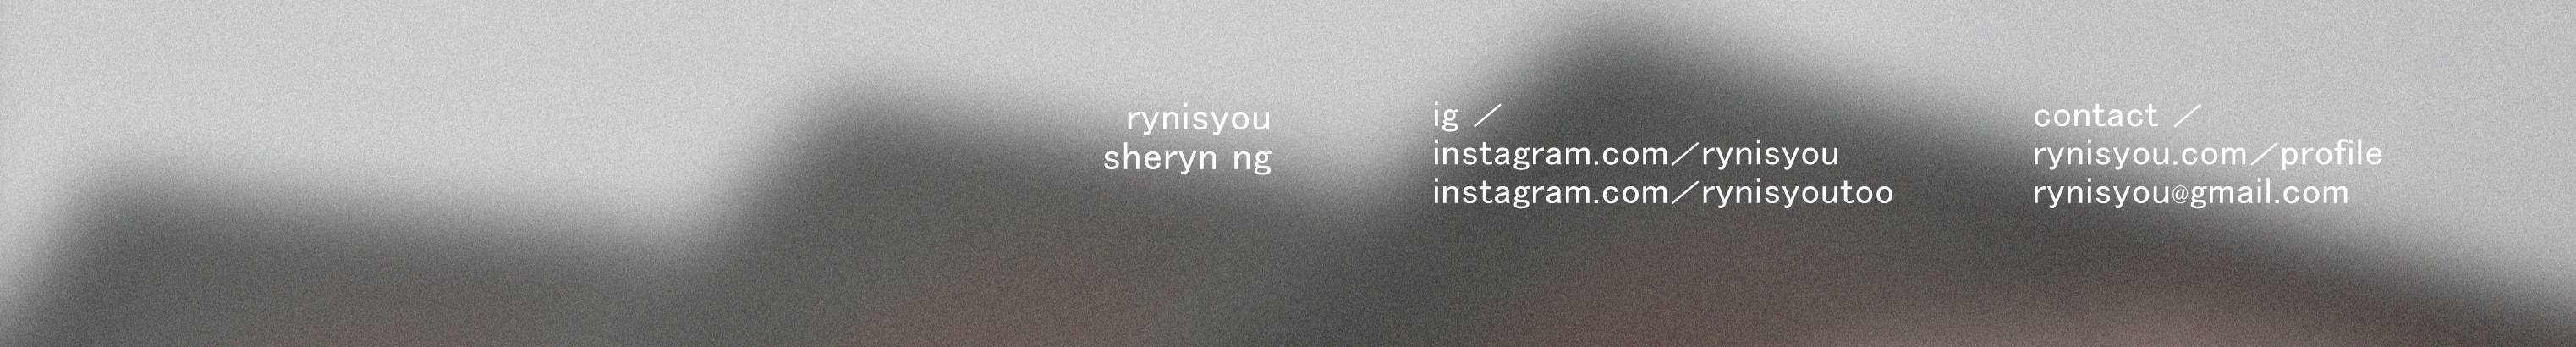 Баннер профиля RYNISYOU (Sheryn Ng)